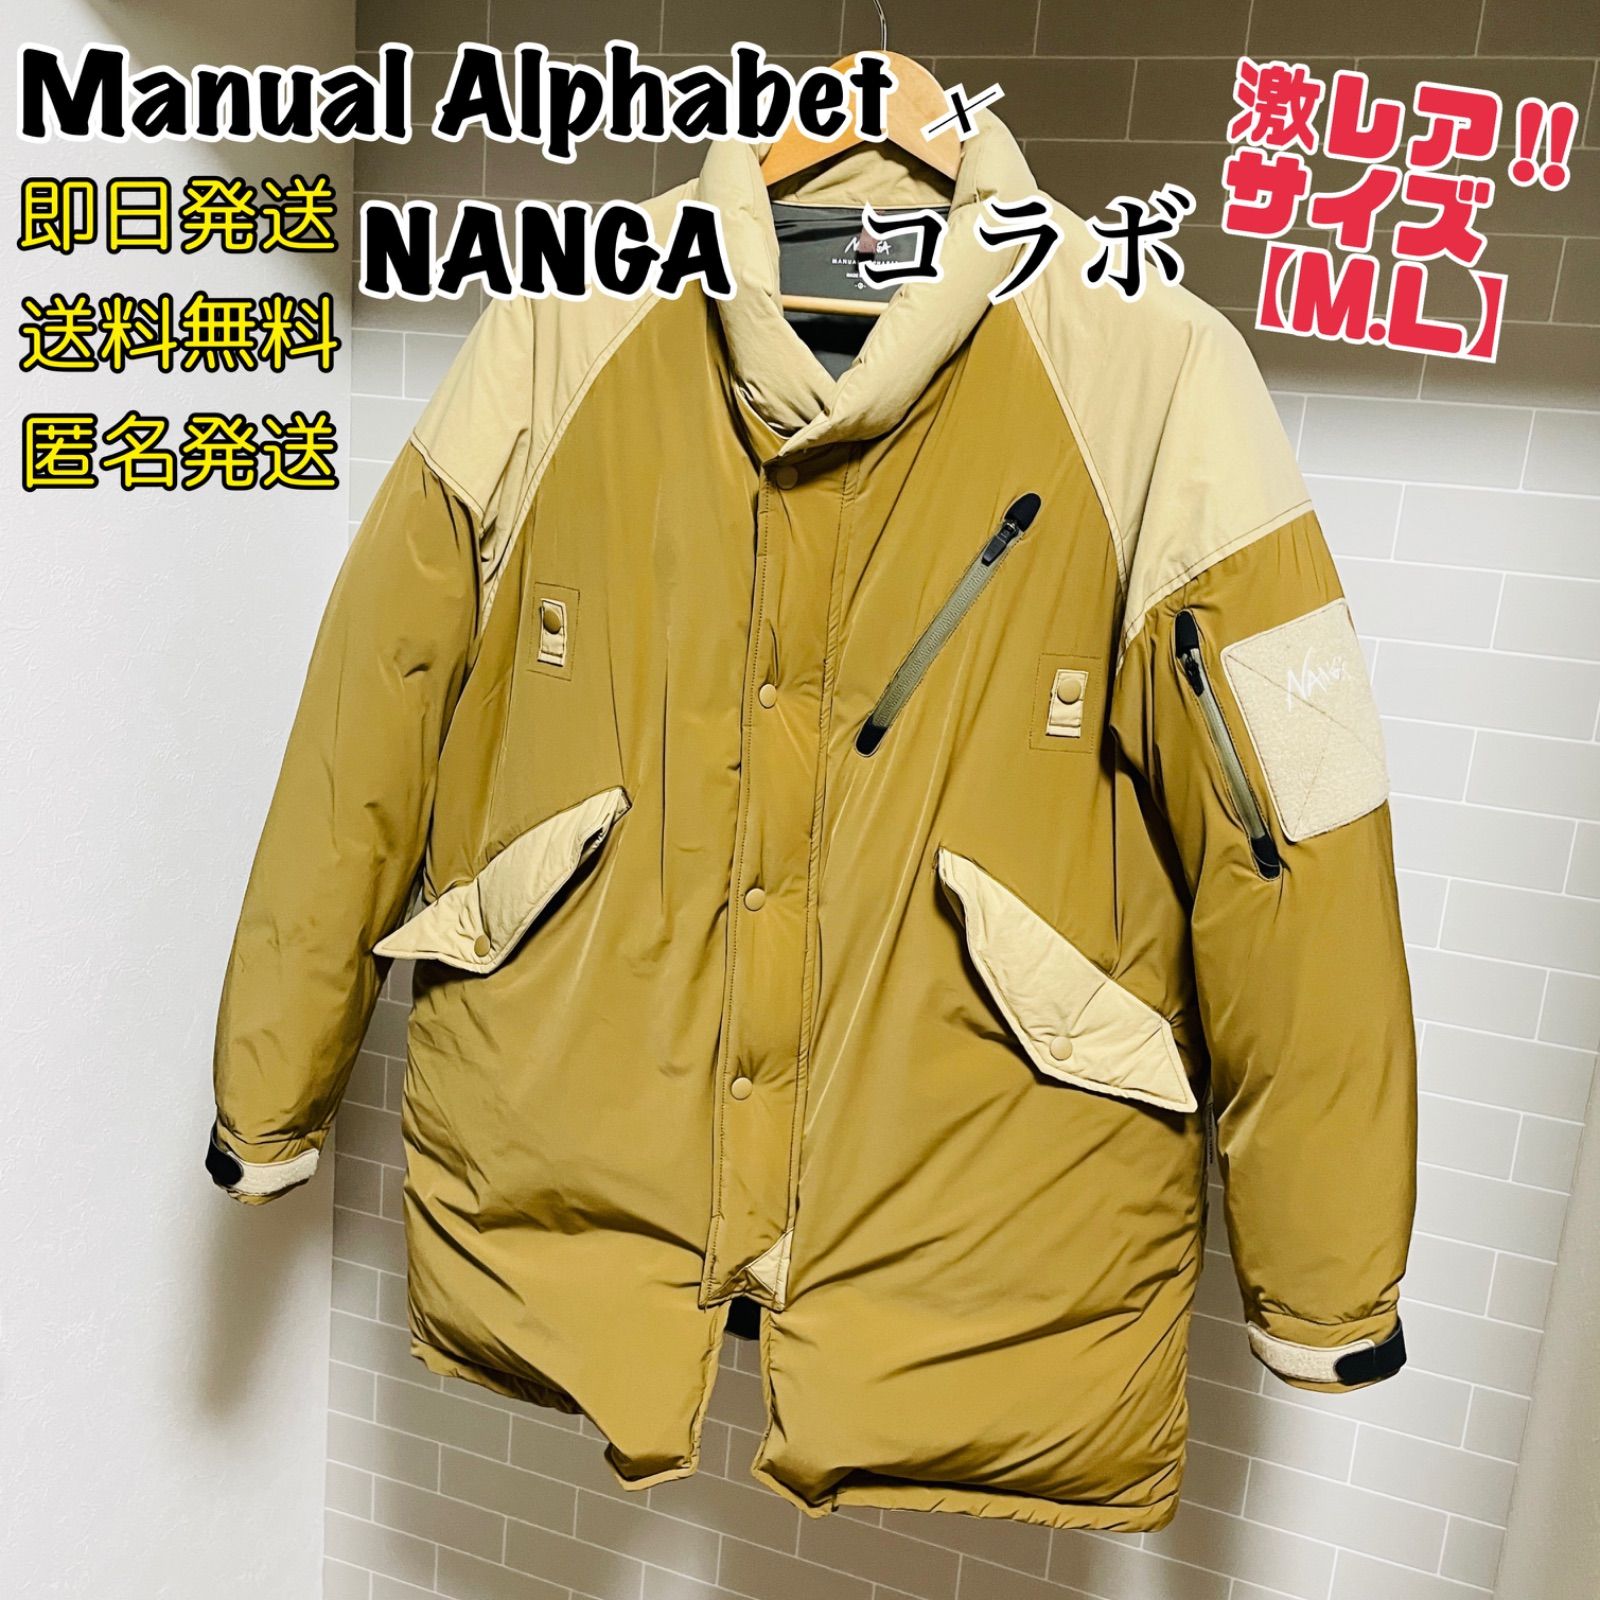 激レアコラボ Manual Alphabet × NANGA ダウンジャケット - メルカリ